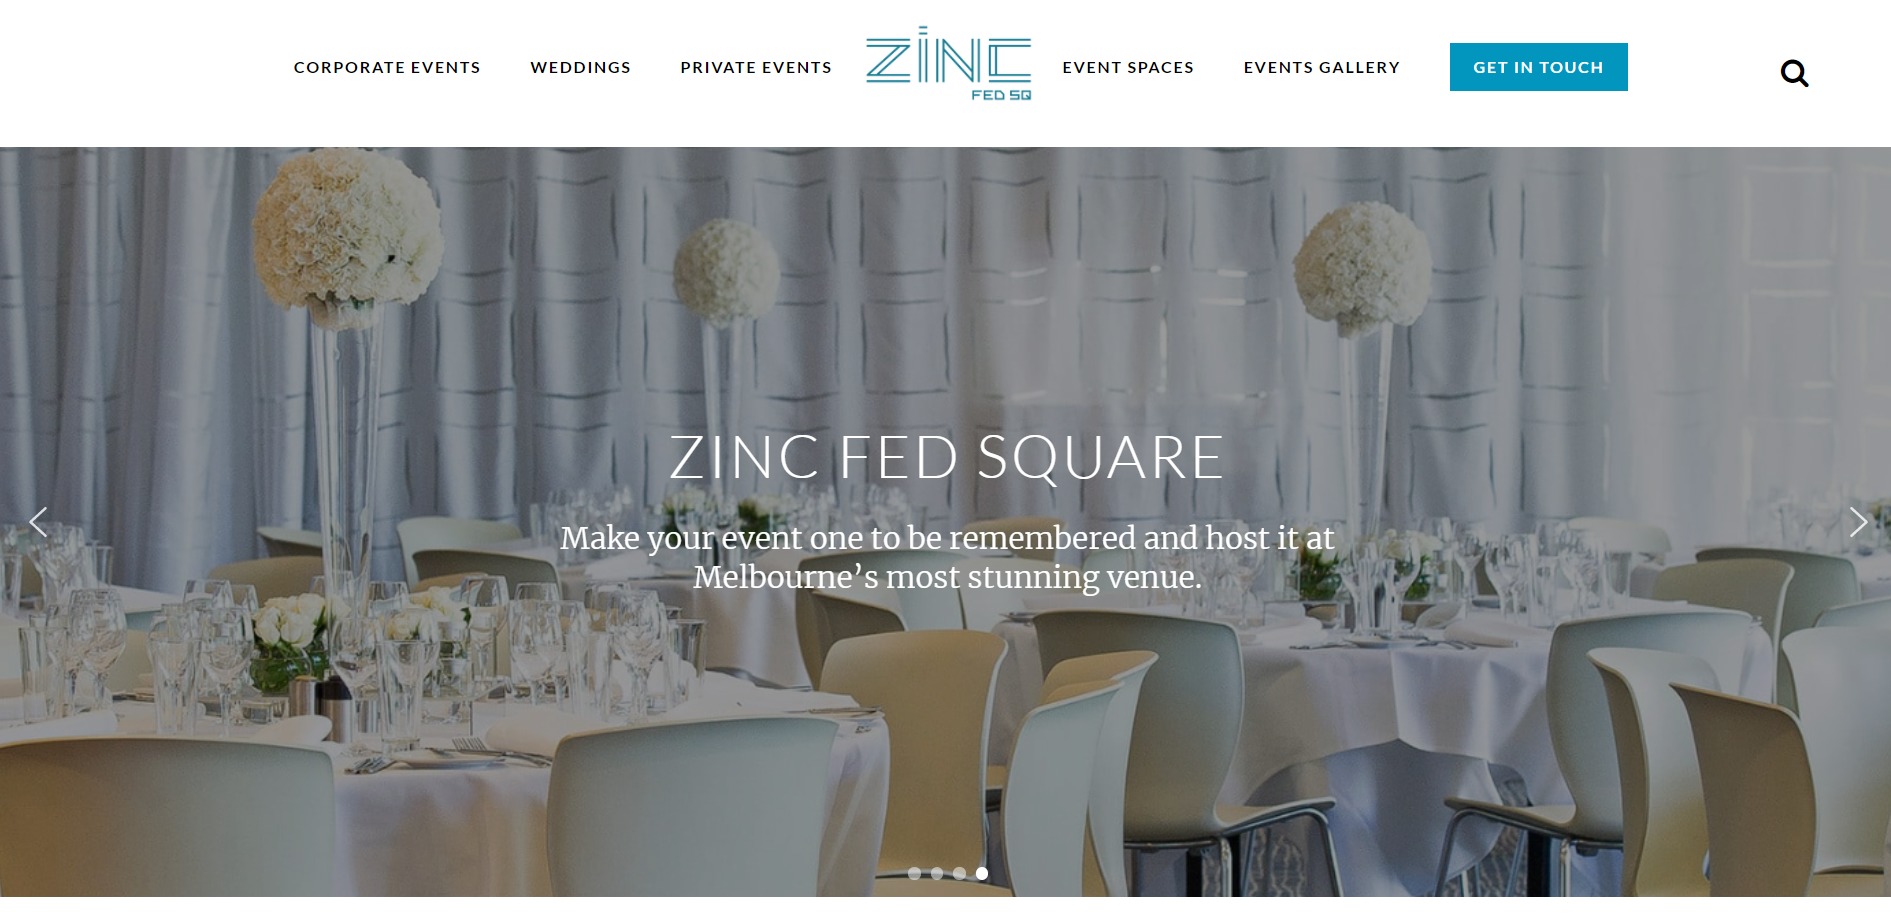 Zinc Fed Square